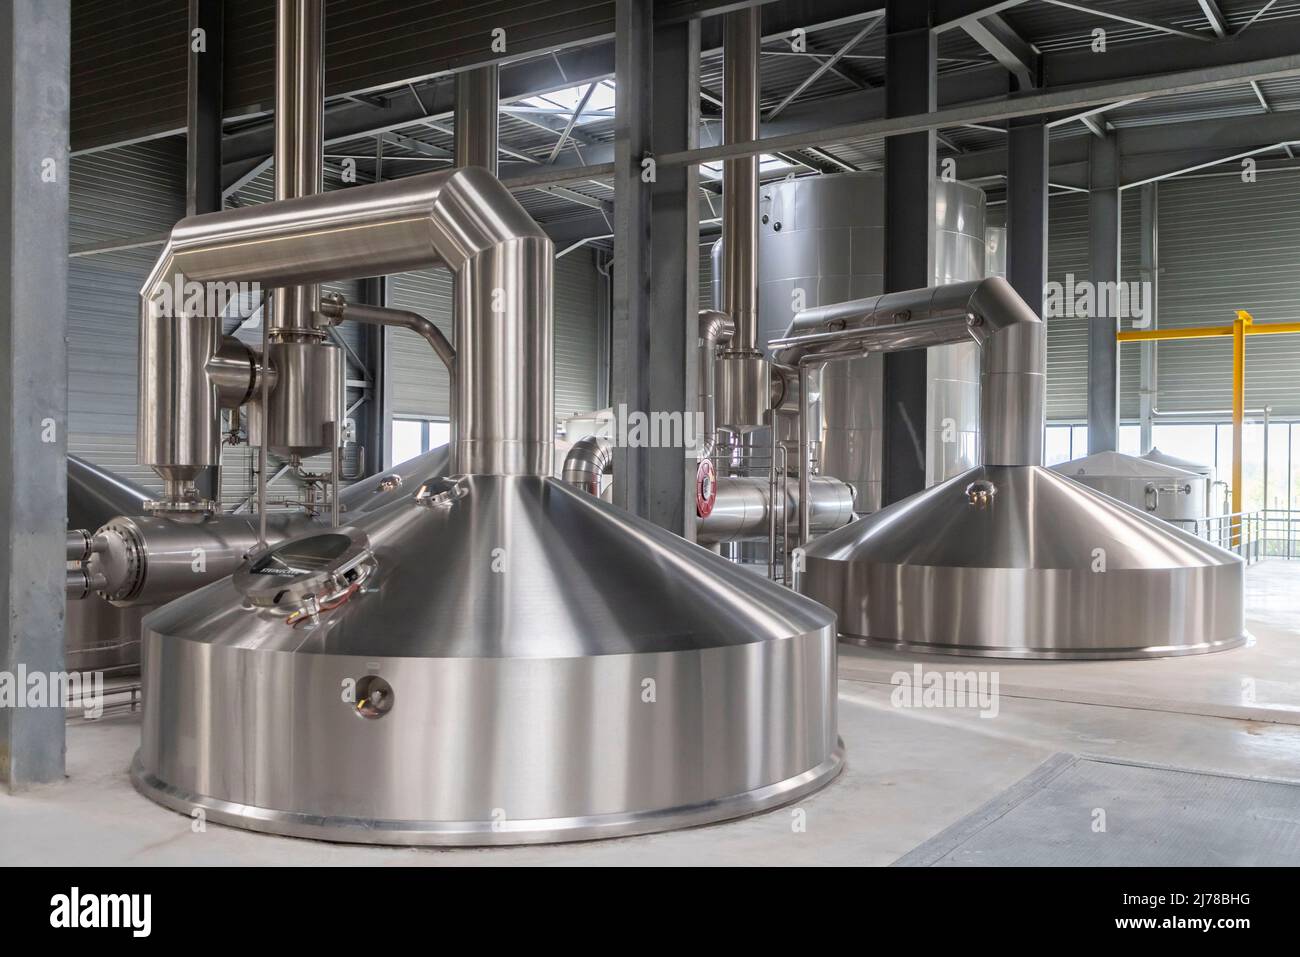 May 2, 2022, Arques, France, France: Arques, France May 2, 2022 - Production site of the Goudale brewery. The French brewery Goudale has just invested 25 million euros in its Arques plant in the Pas-de-Calais department. A new production line allows to pack 35 000 bottles per hour. ..BRASSERIE GOUDALE, ILLUSTRATION, GENERIQUE, USINE, SITE DE FABRICATION, ECONOMIE, HAUTS DE FRANCE, BIERE, PAS DE CALAIS, SAINT OMER, BOISSON, ALCOOL, BATIMENT INDUSTRIEL, EMPLOI, HOUBLON, CHAINE DE PRODUCTION, CEREALES, FERMENTATION, TRAVAIL, BIERES DE SPECIALITE, BRASSEUR, ACTIVITE BRASSICOLE, TRADITION, RECETTE, Stock Photo